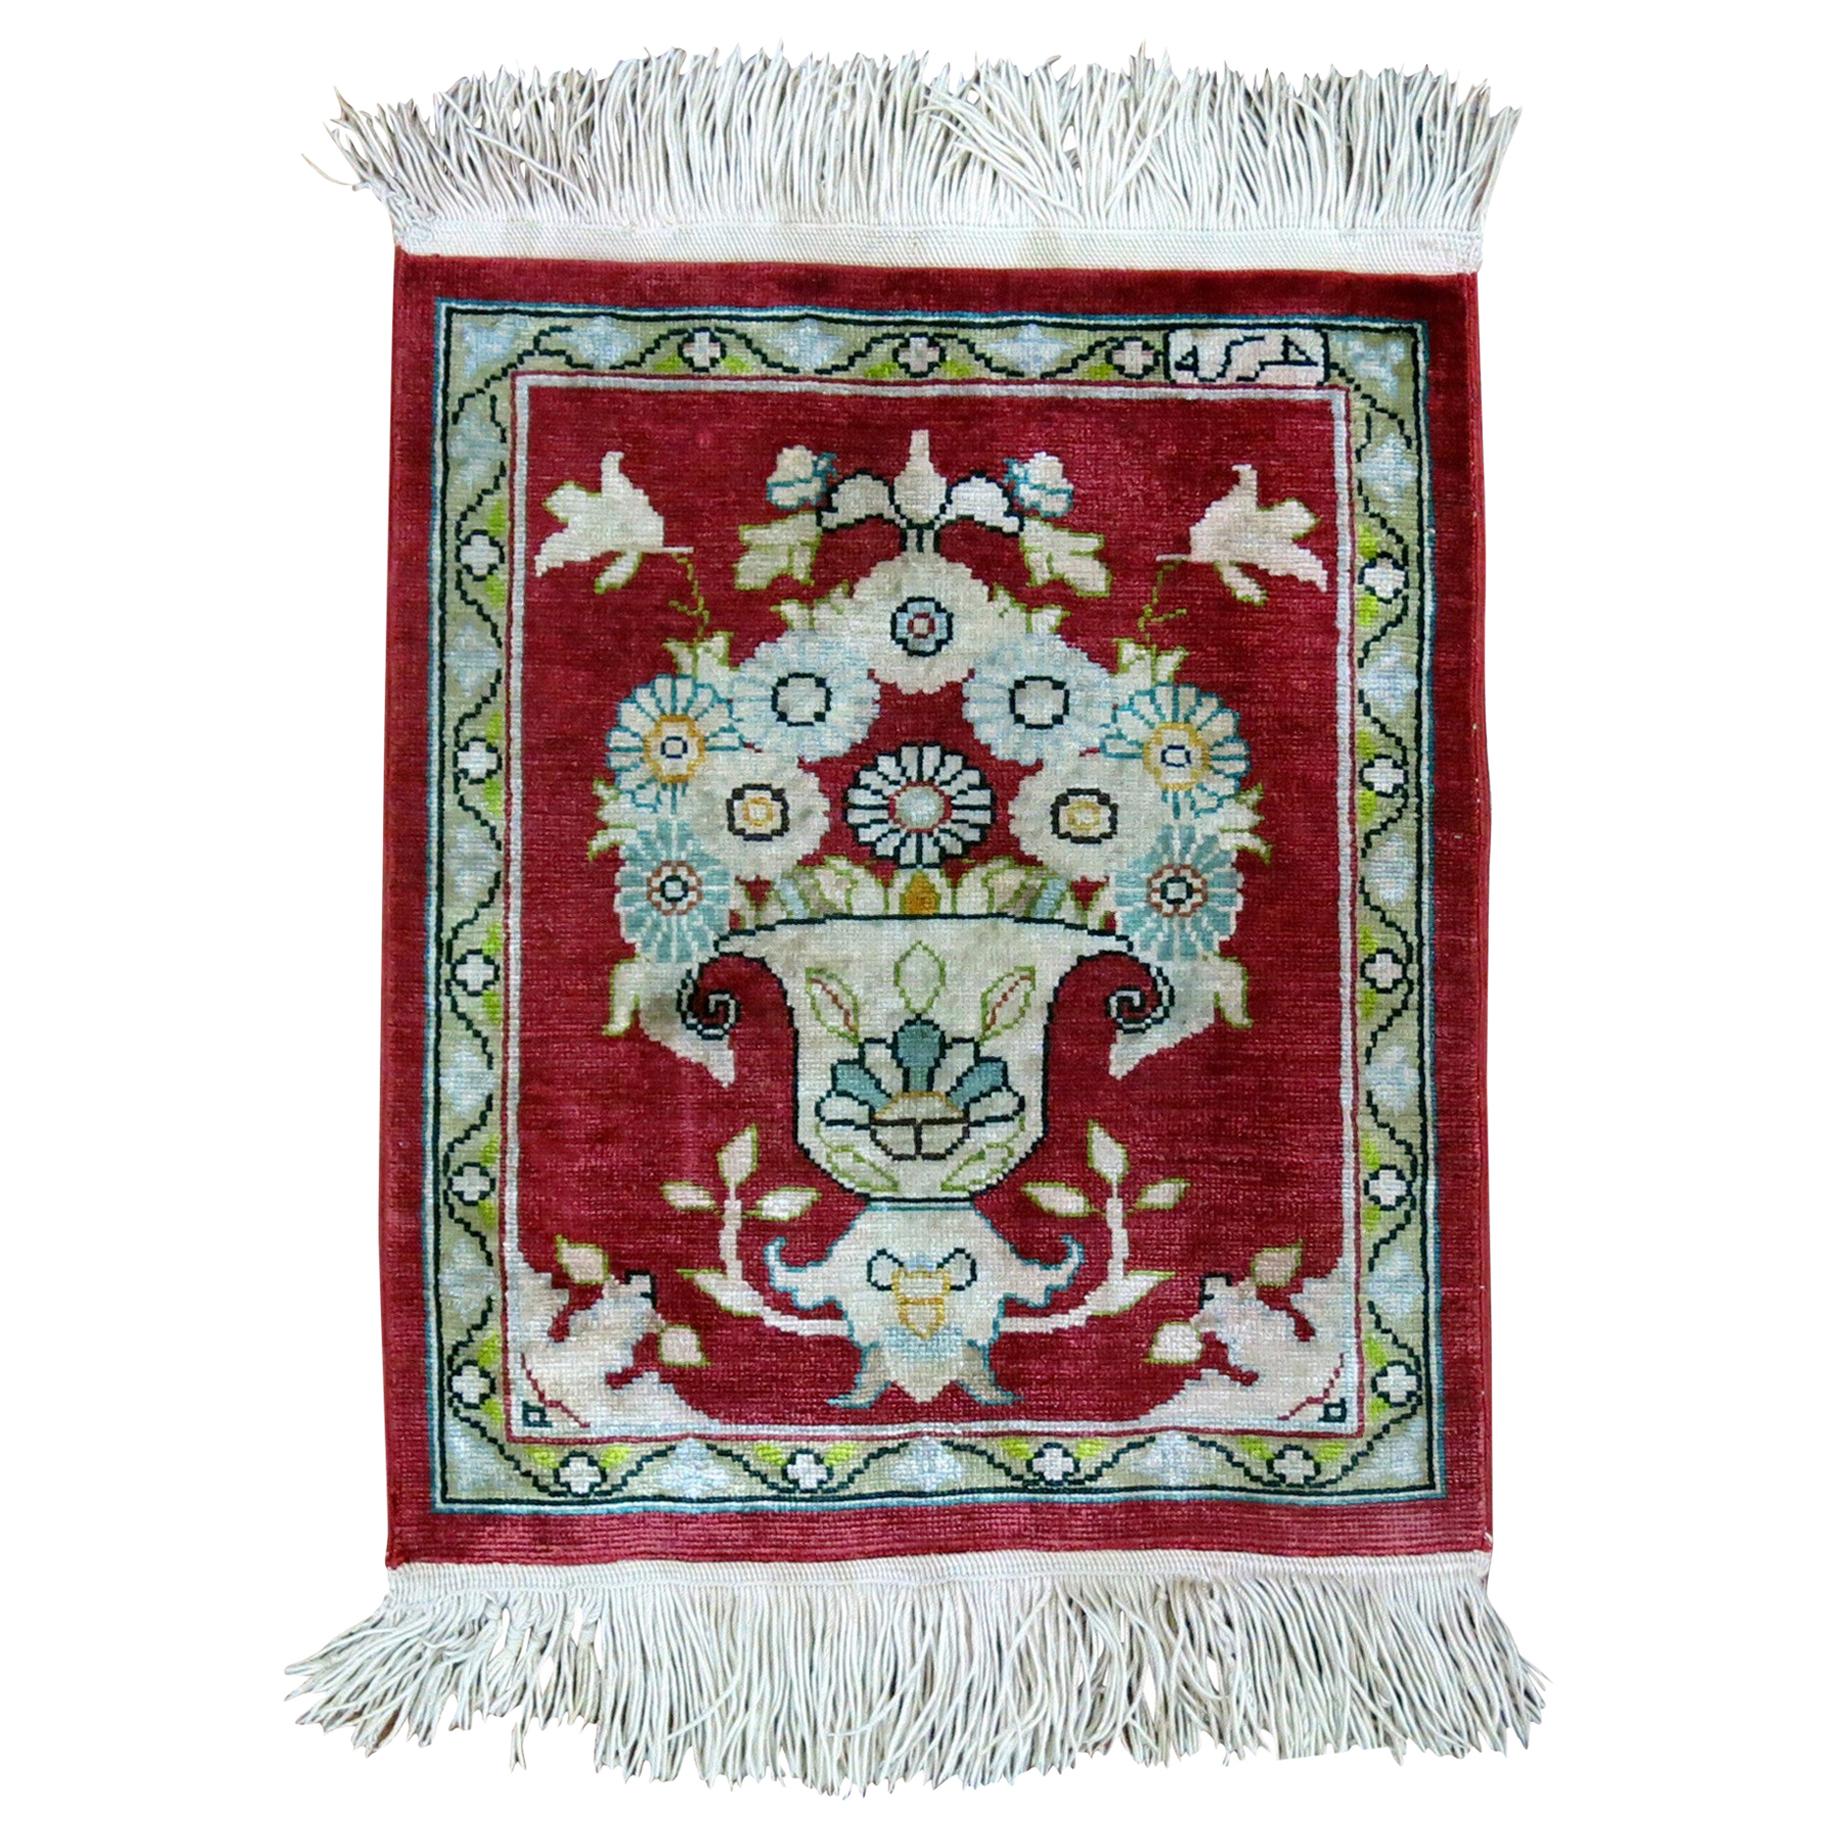 Chinesischer türkischer Teppich aus feiner Seide in Rot und Zinn in Chinesischer Größe